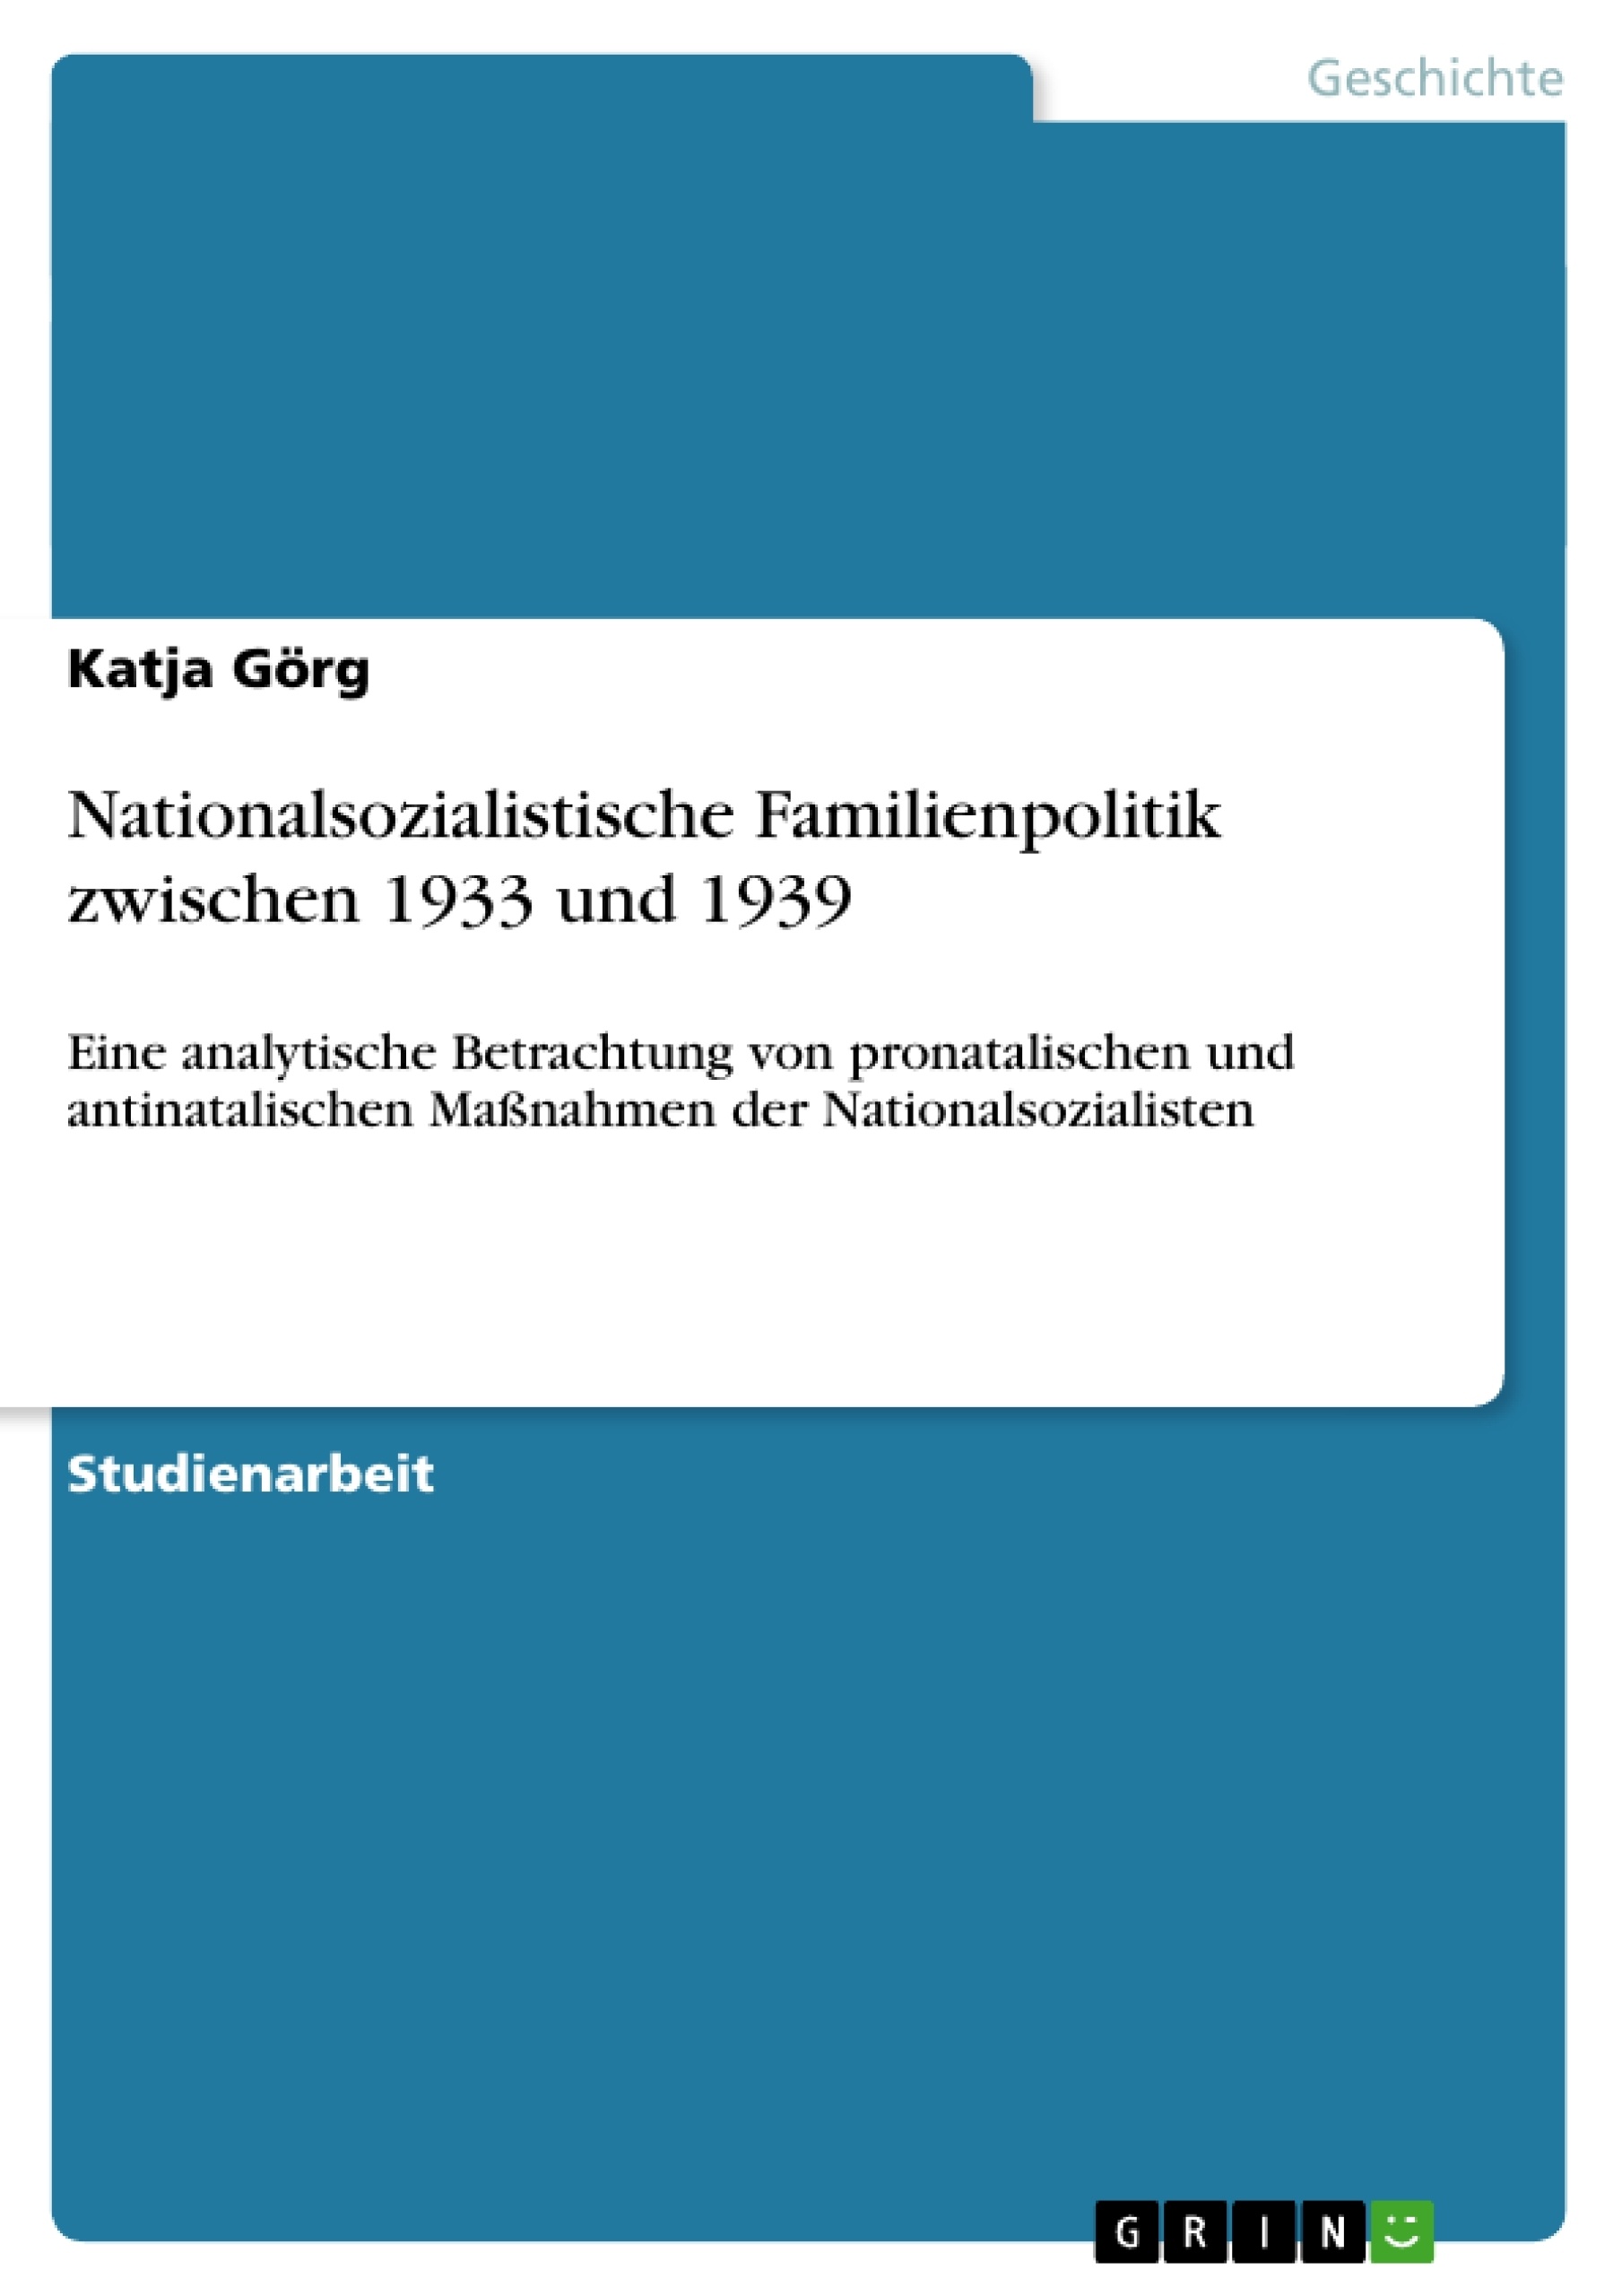 Title: Nationalsozialistische Familienpolitik zwischen 1933 und 1939